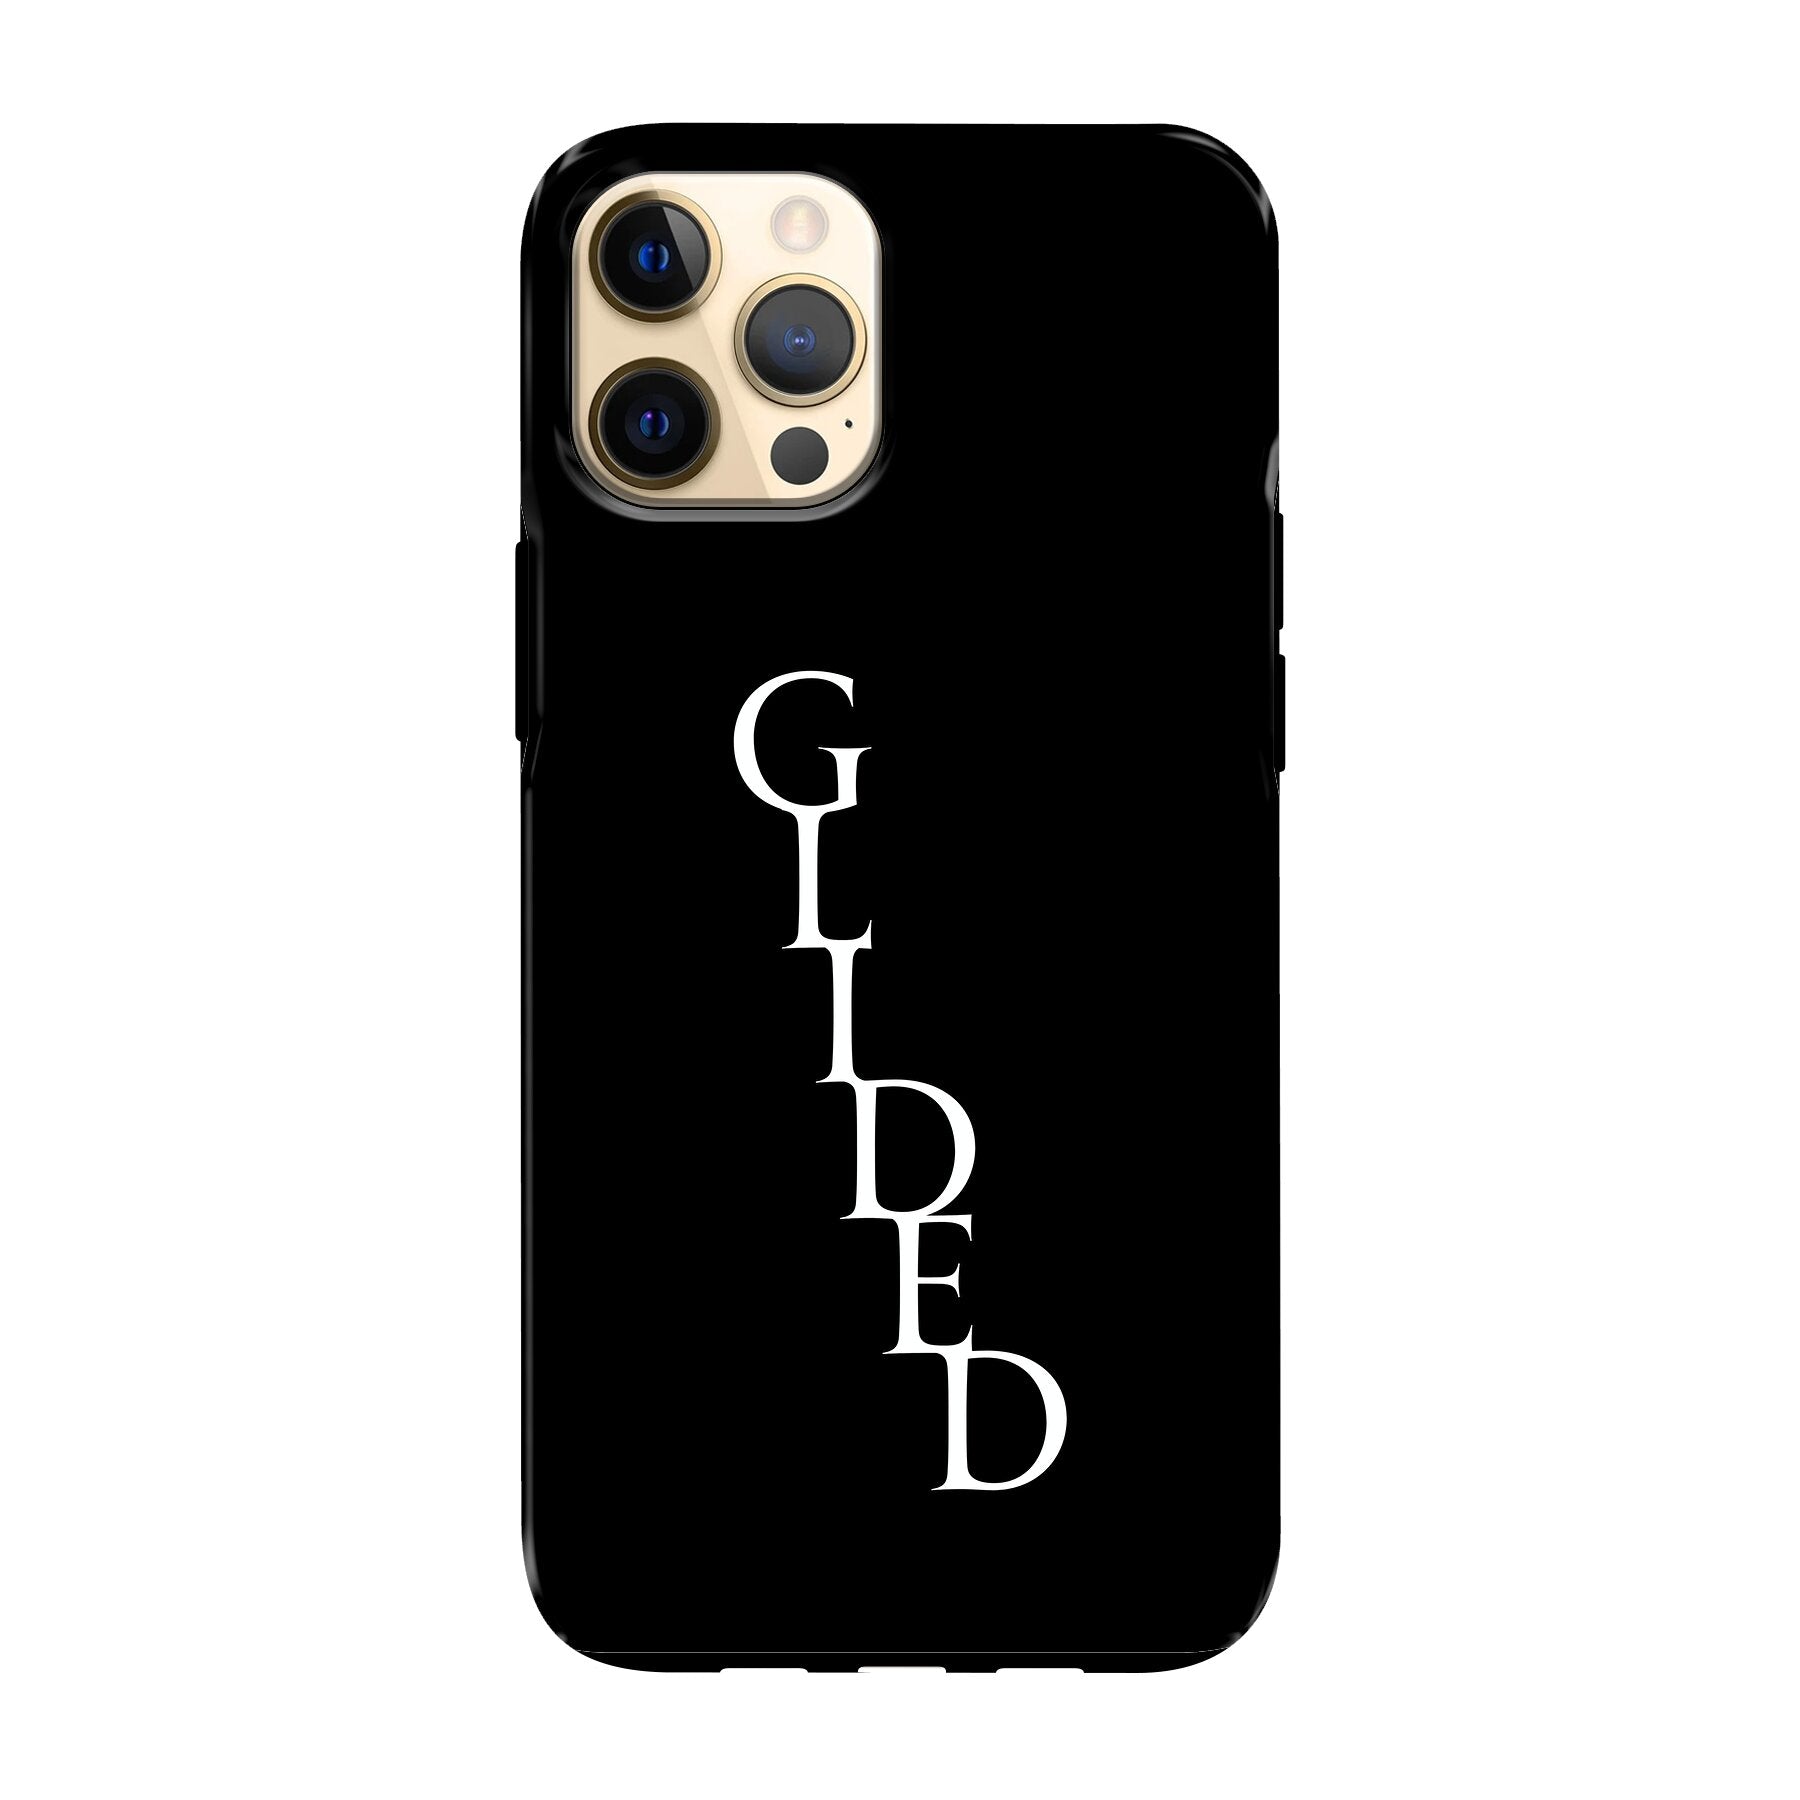 Premium Glided Exclusiv - iPhone 12 Pro Max Handyhülle - Bumper case von Glided